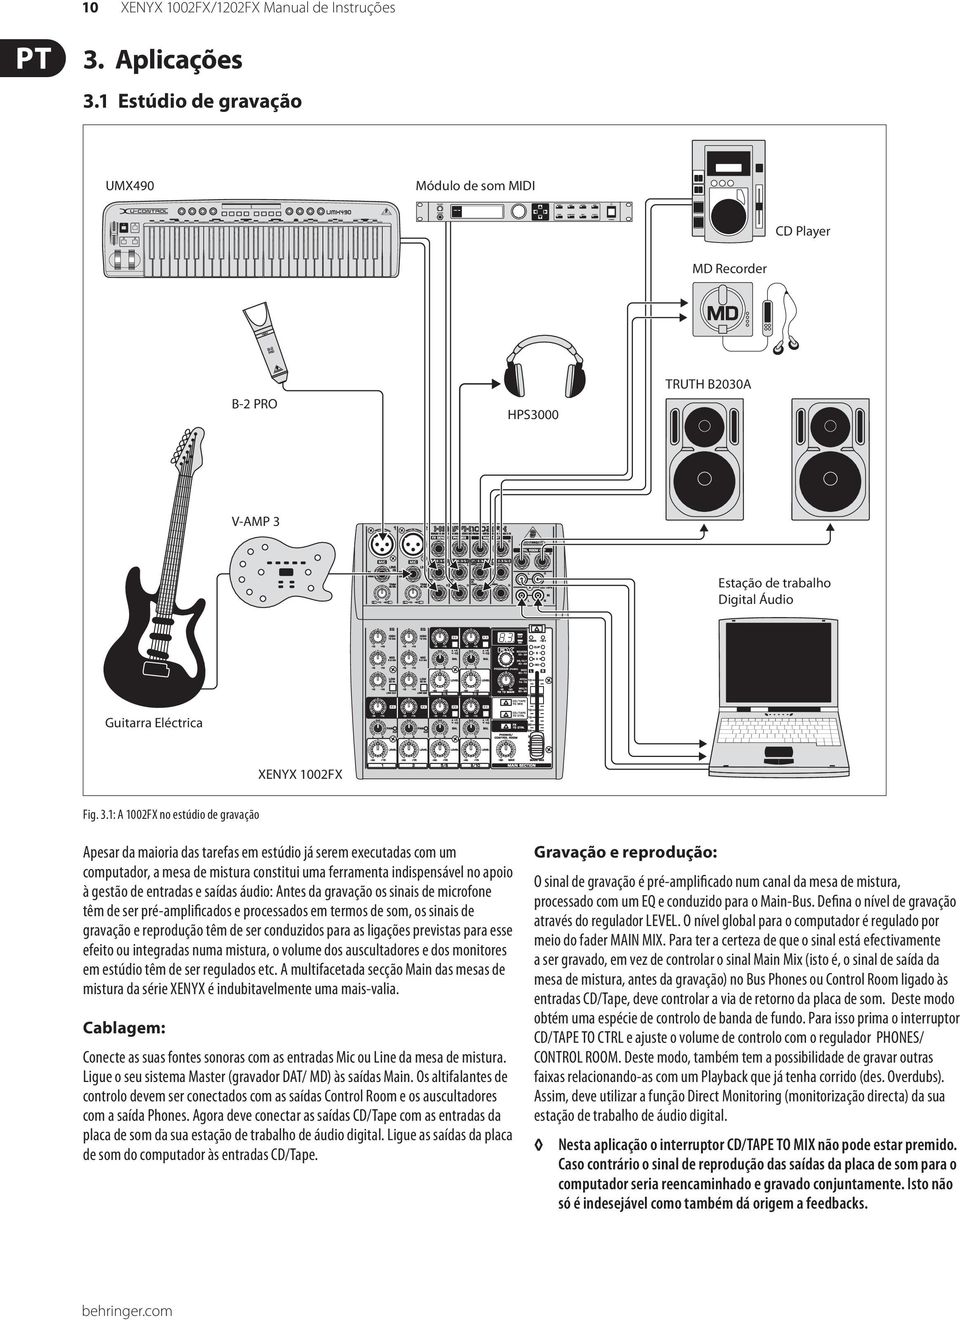 Estação de trabalho Digital Áudio Guitarra Eléctrica XENYX 1002FX Fig. 3.